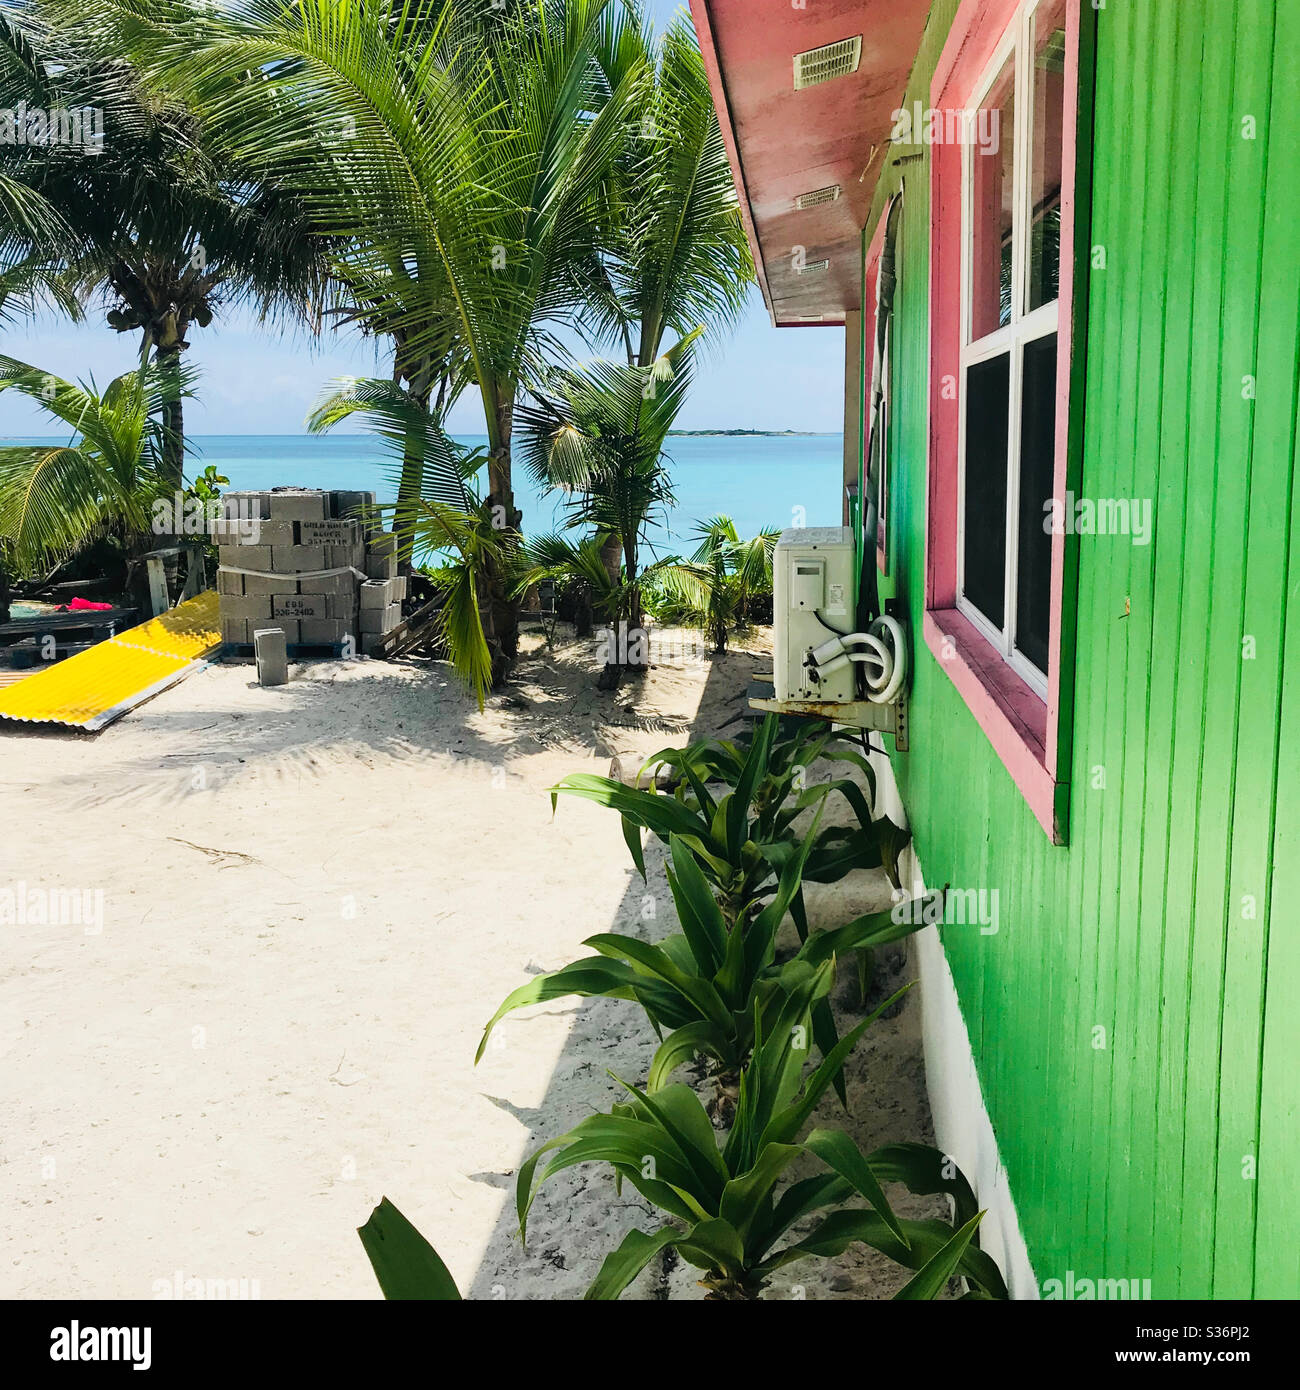 Beach house in Exuma, Bahamas Stock Photo